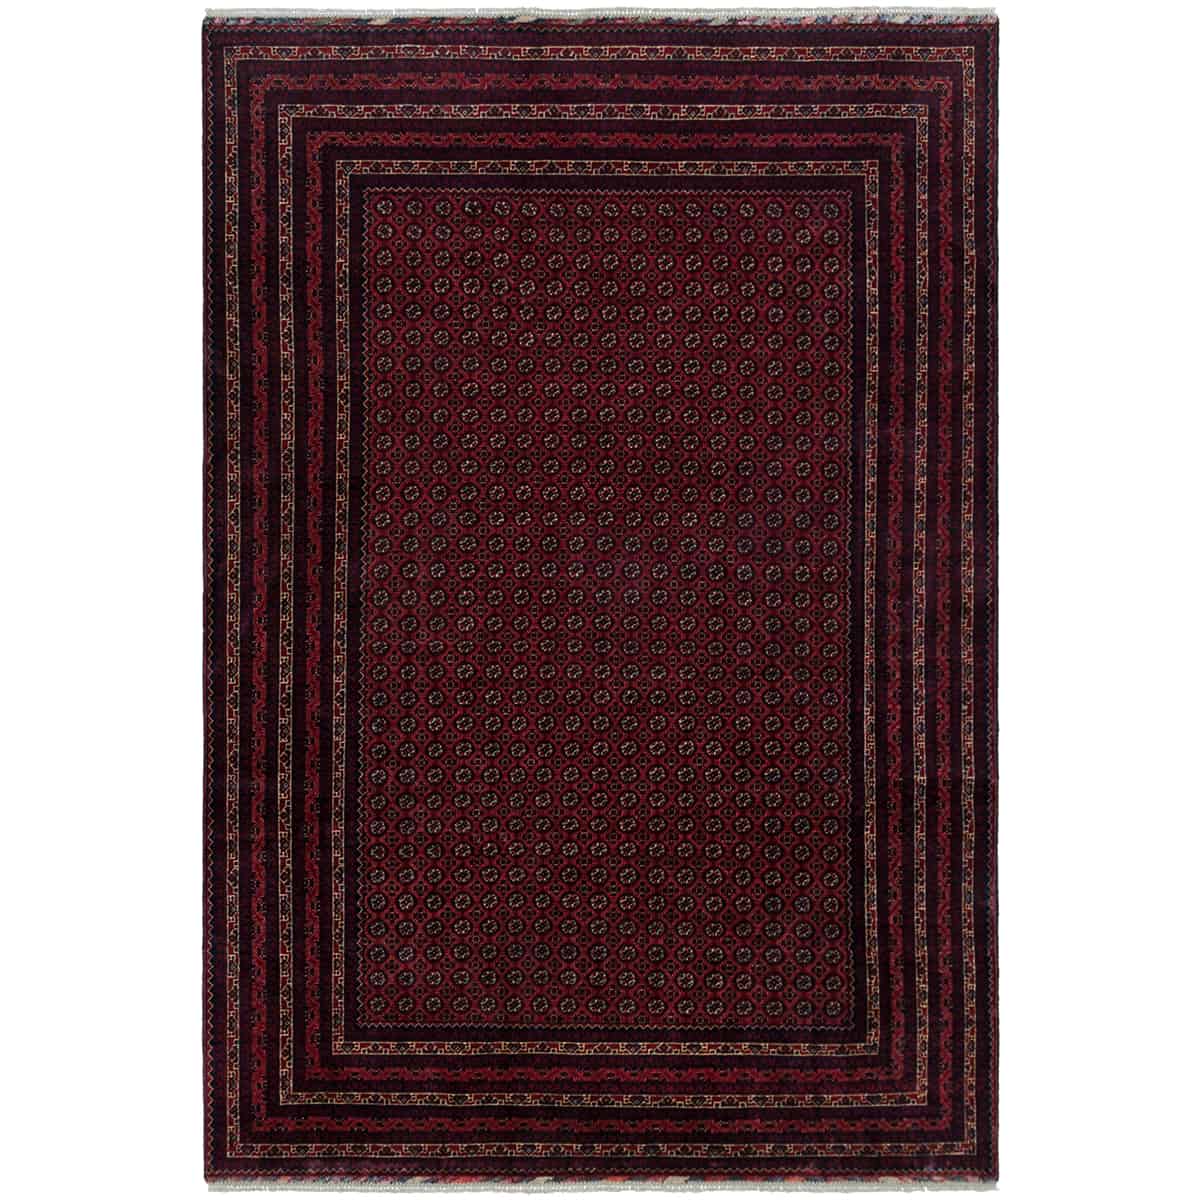  אפגני באשיר 00 אדום 198x288 | השטיח האדום 